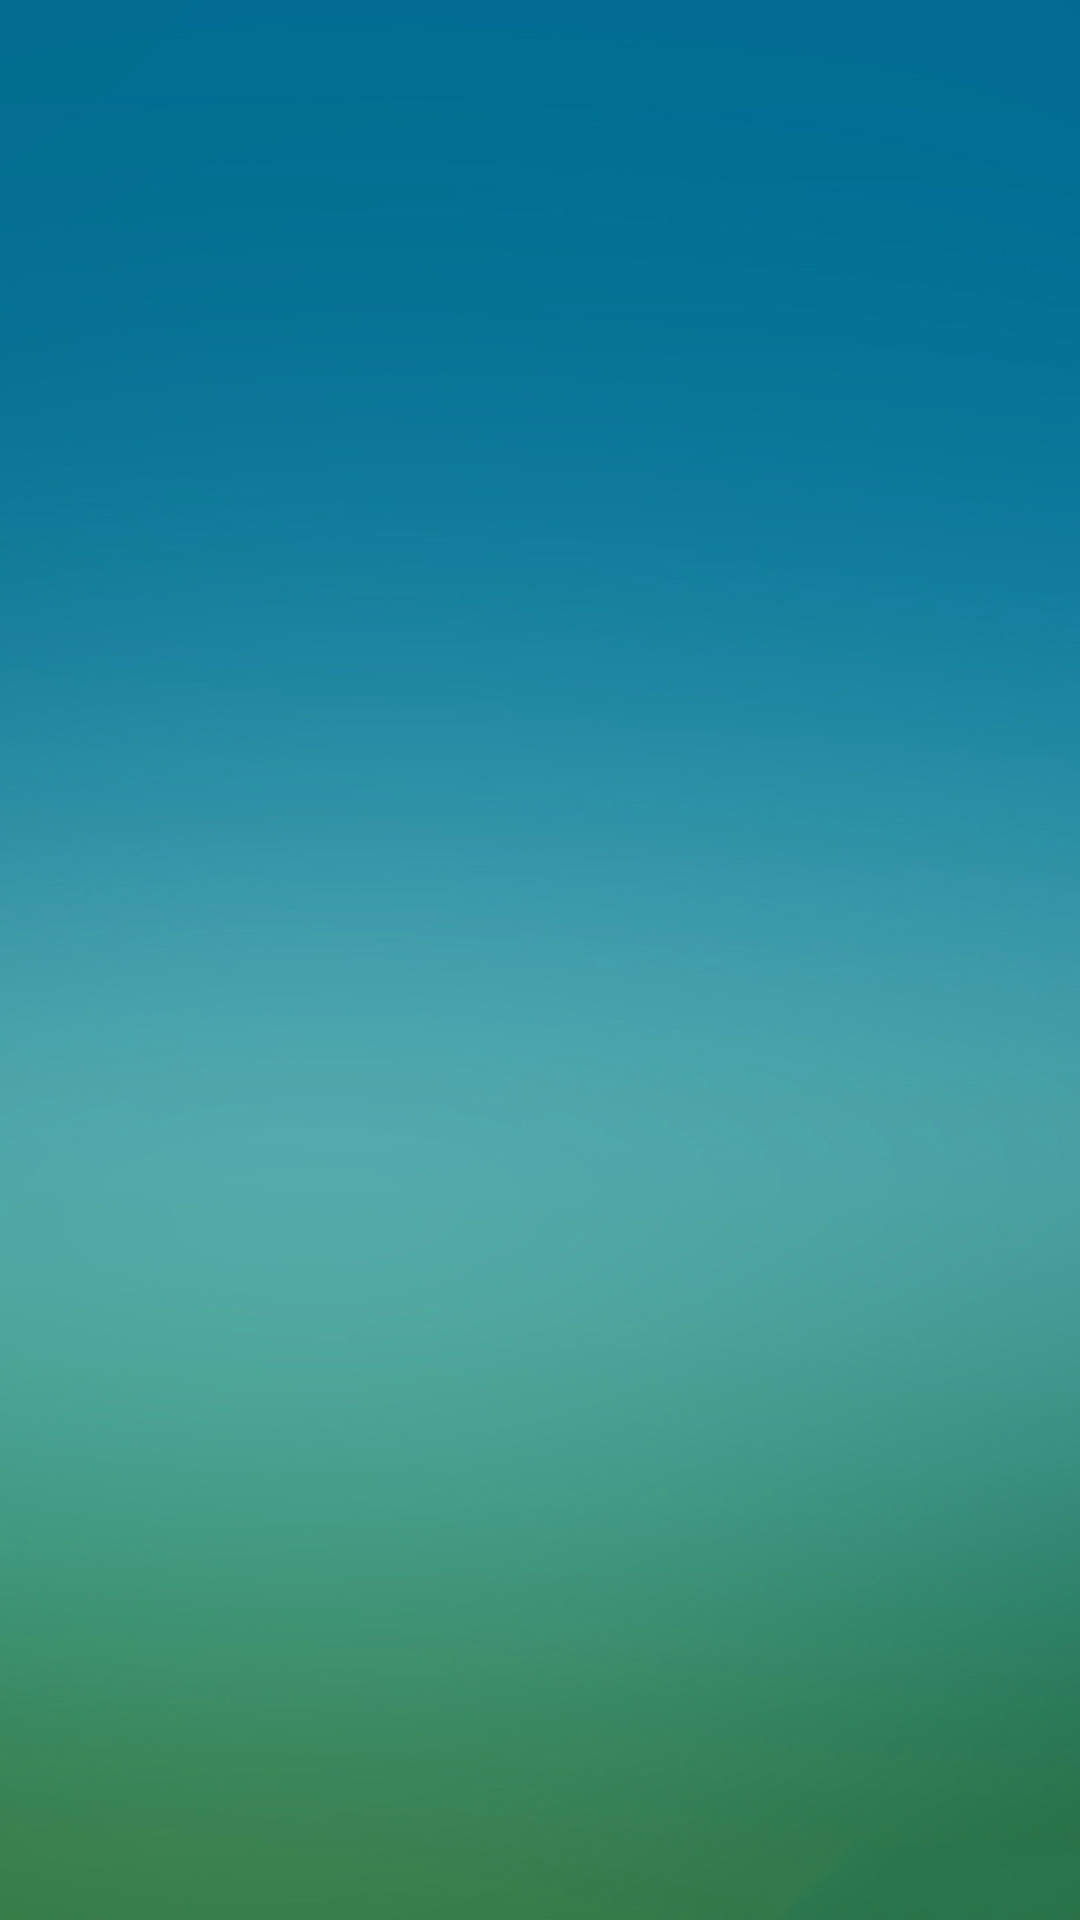 1080x1920 Blue Green Gradation Wallpaper